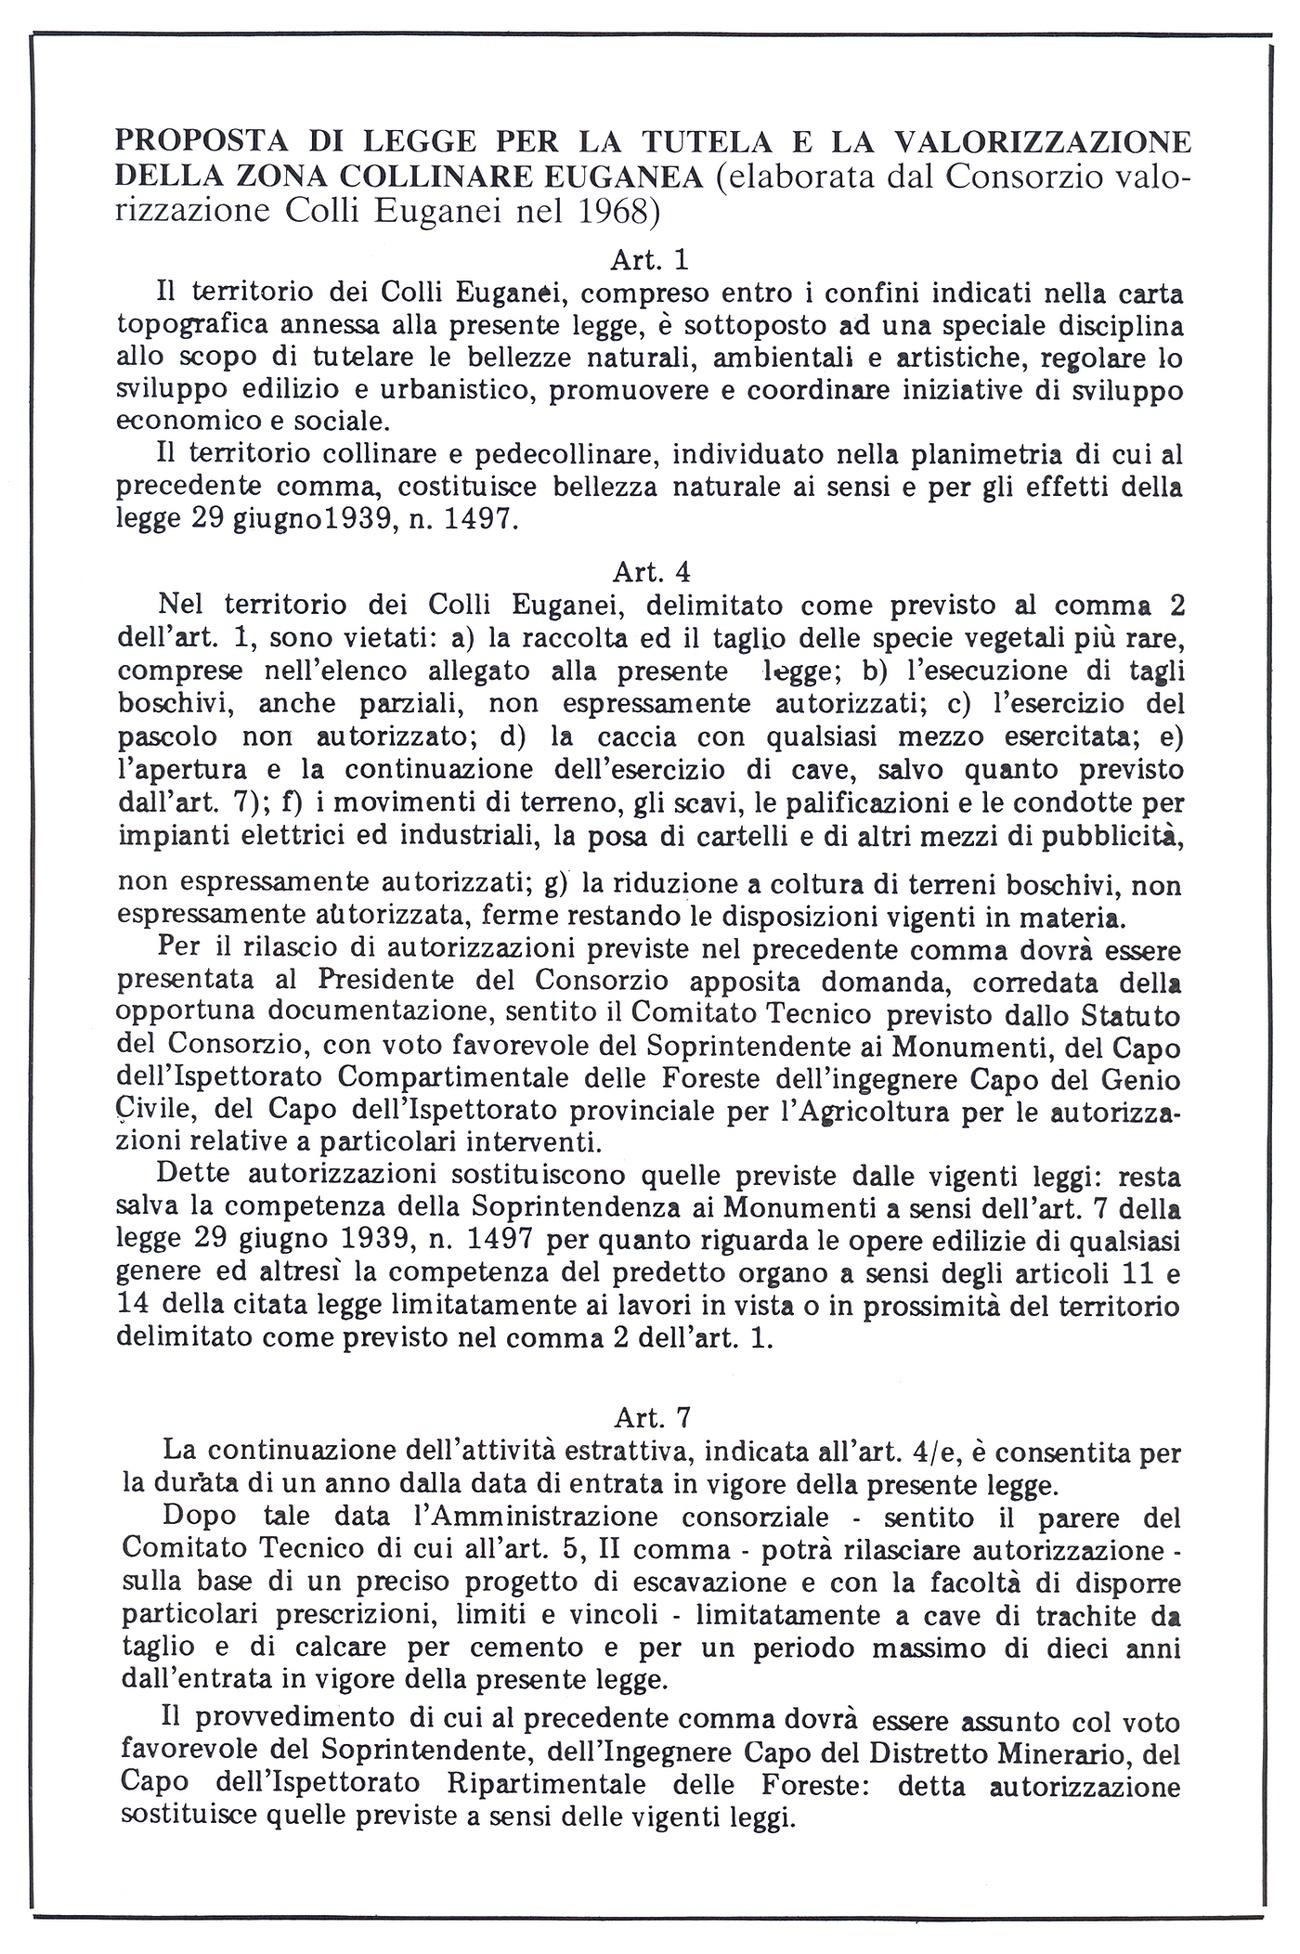 Alcuni articoli della proposta di legge per la tutela e la valorizzazione dei Colli Euganei del 1968.